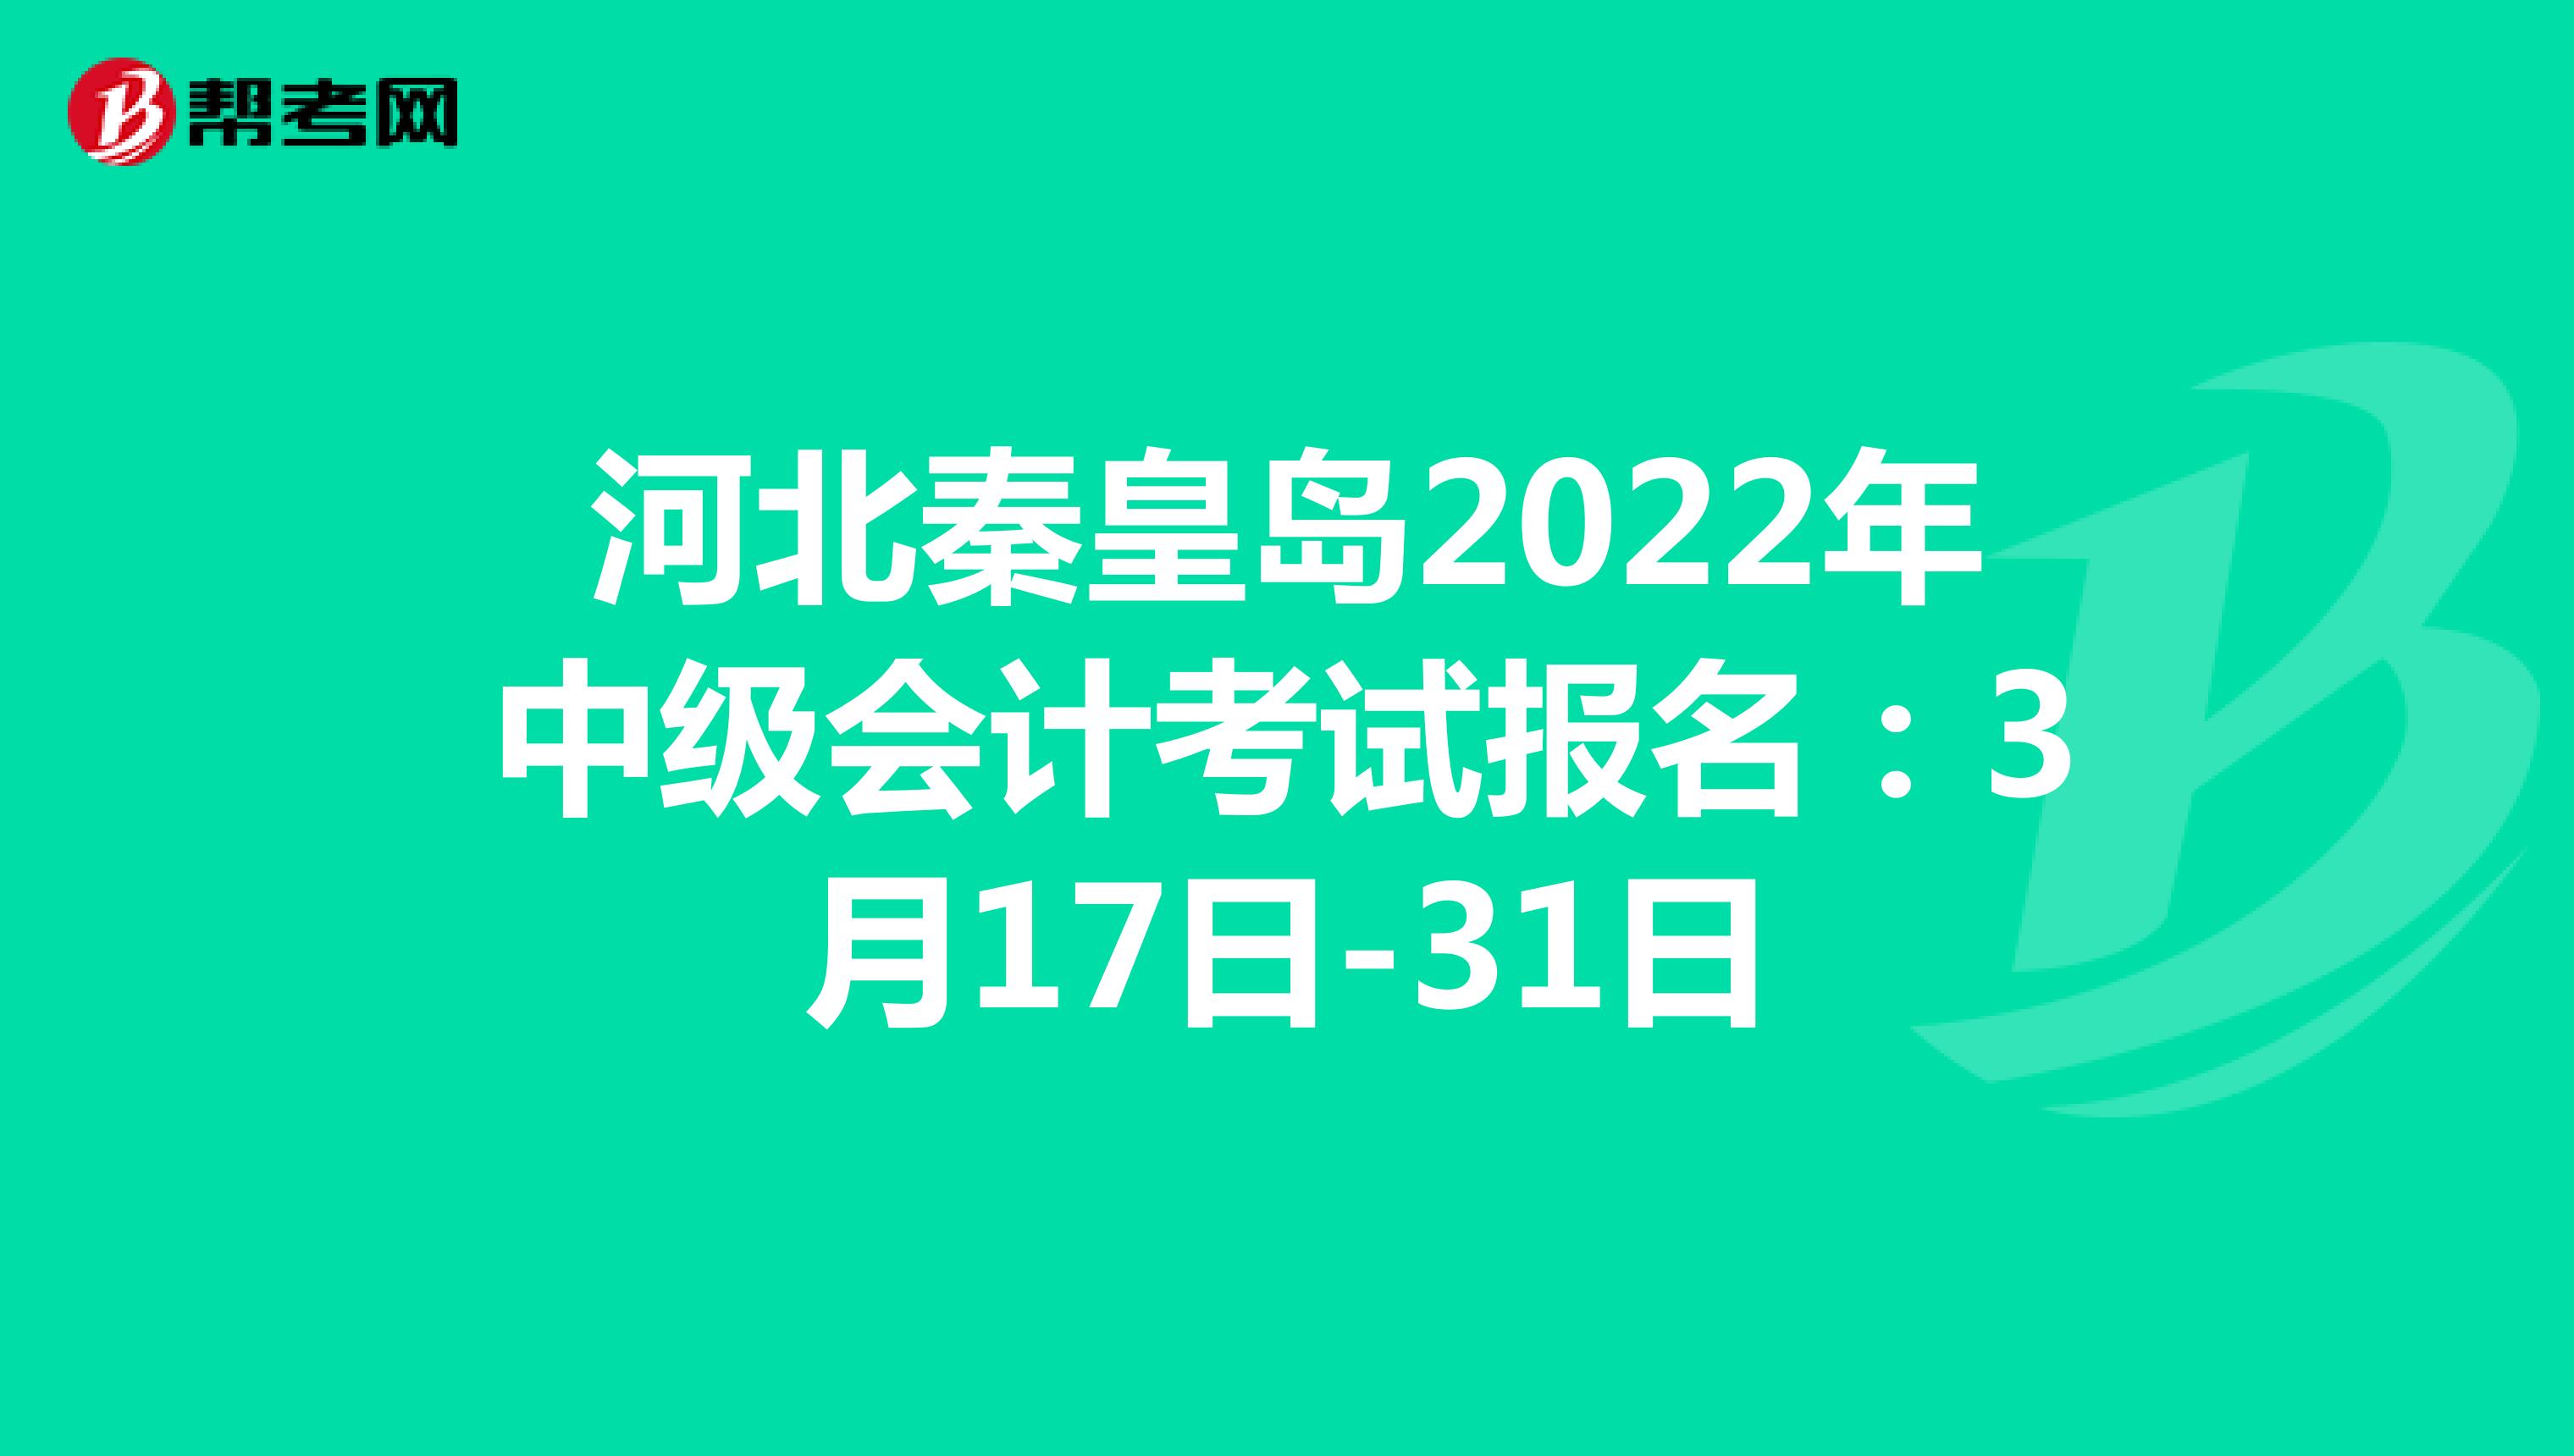 河北秦皇岛2022年中级会计考试报名：3月17日-31日